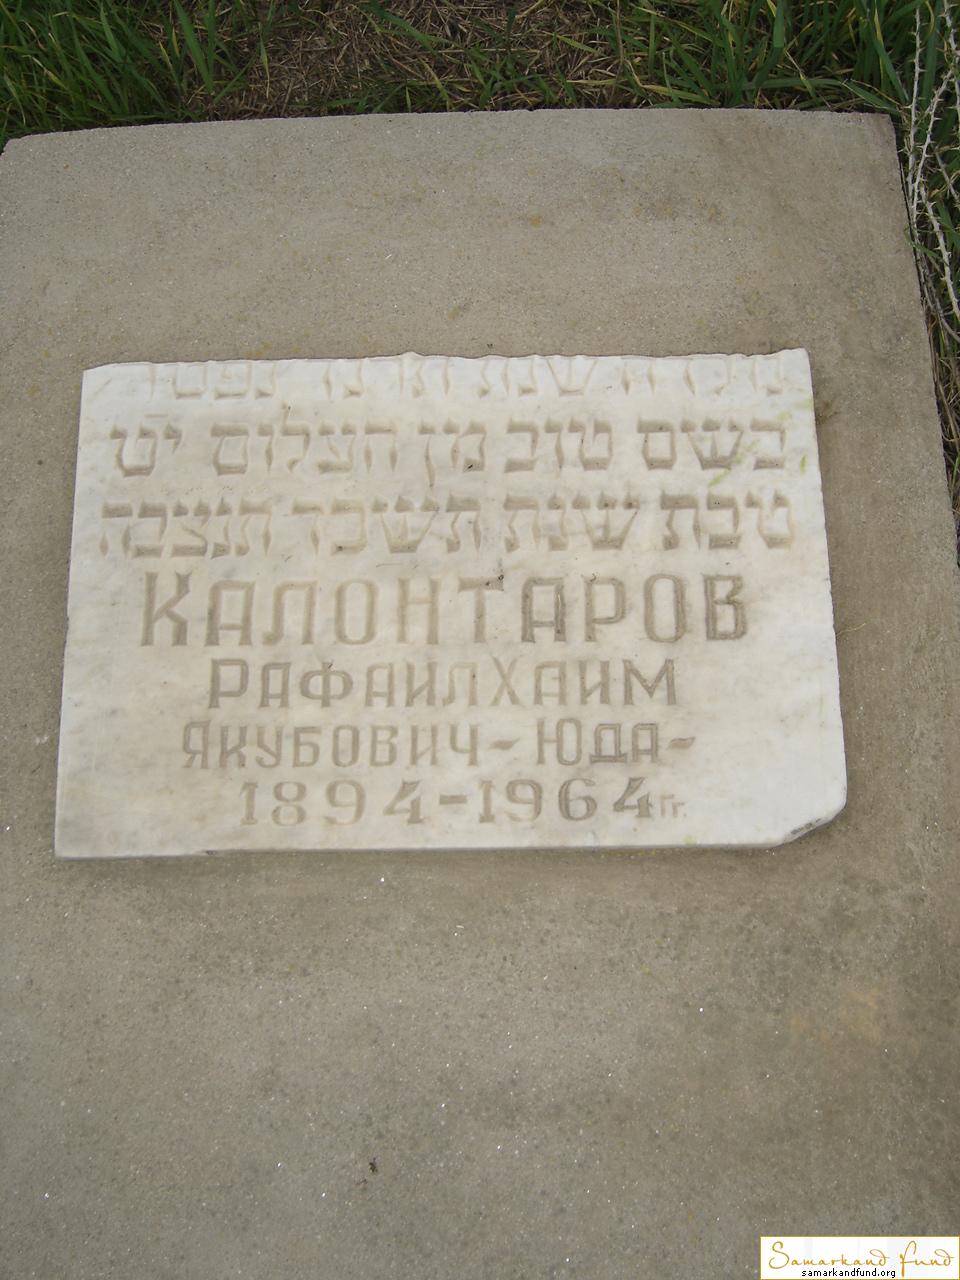 Калонтаров Рафаил Хаим Якубович  1894 - 1964 зах. 230.122  № 14.JPG